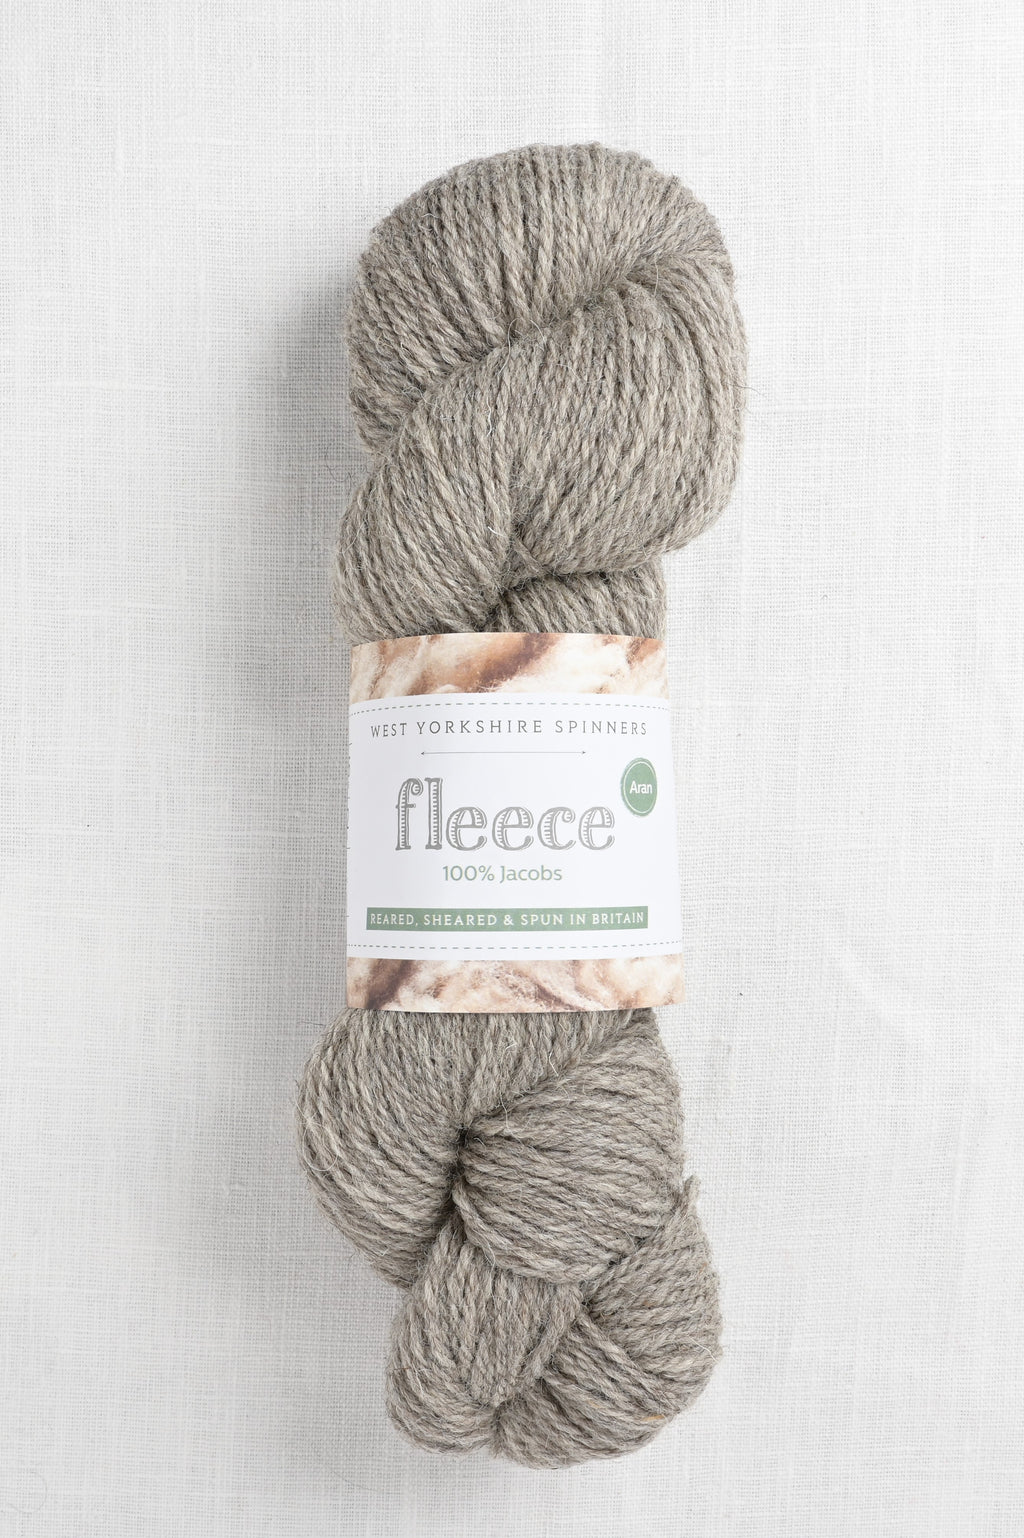 WYS Fleece 100% Jacobs Aran 005 Light Grey (Undyed)